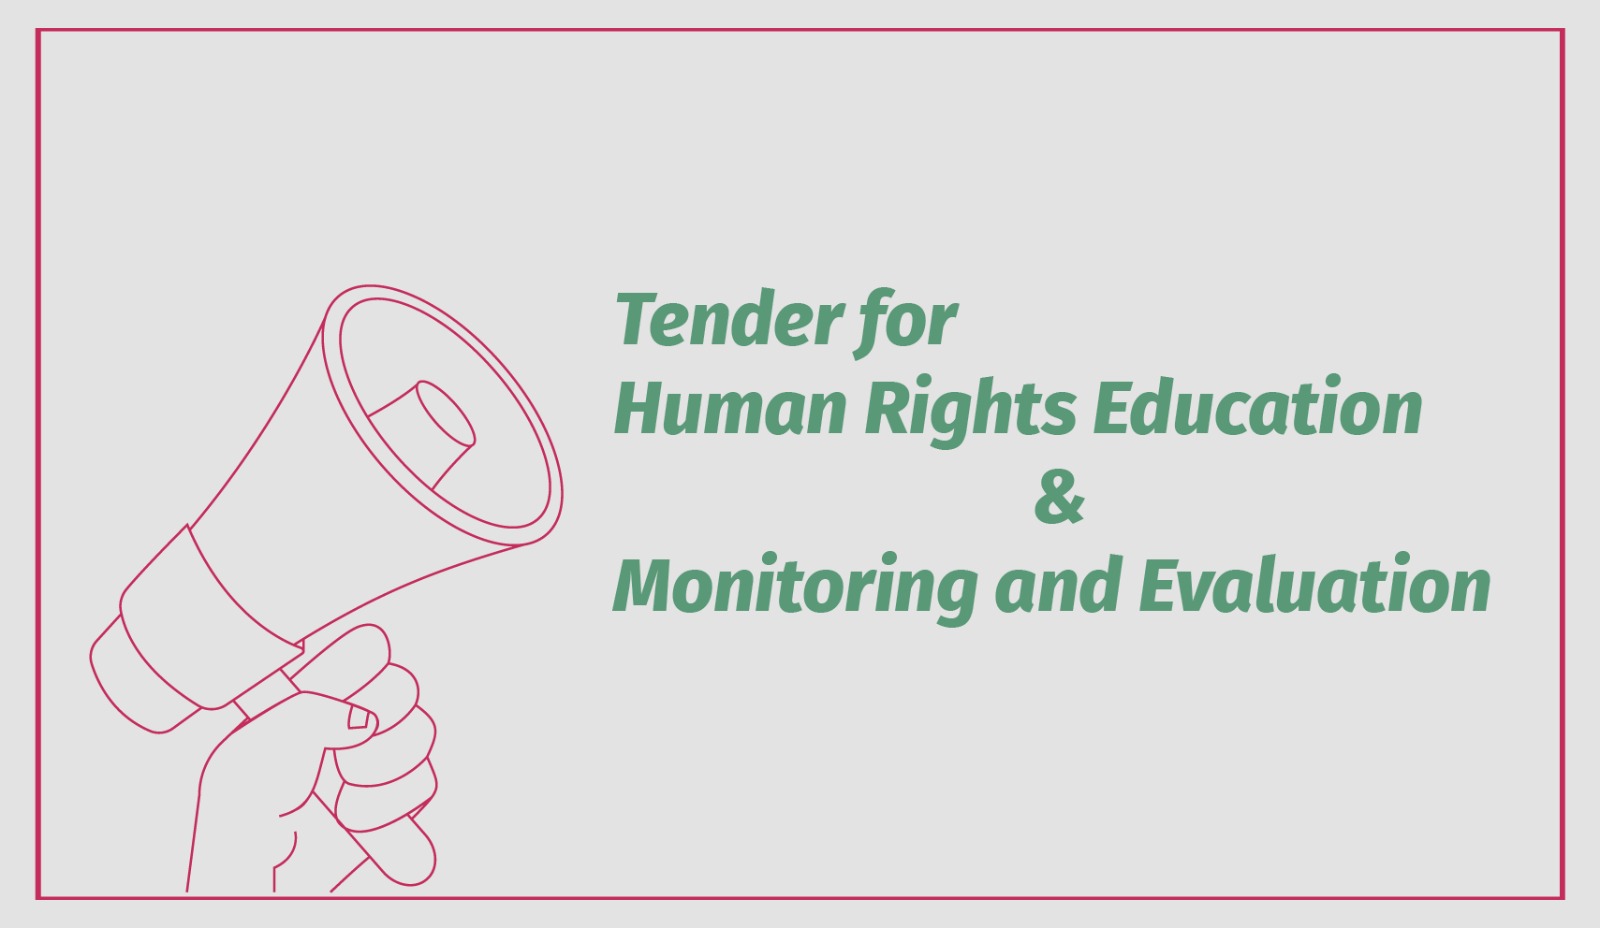 მოწვევა ტენდერზე - ადამიანის უფლებათა სწავლება; მონიტორინგი და შეფასება